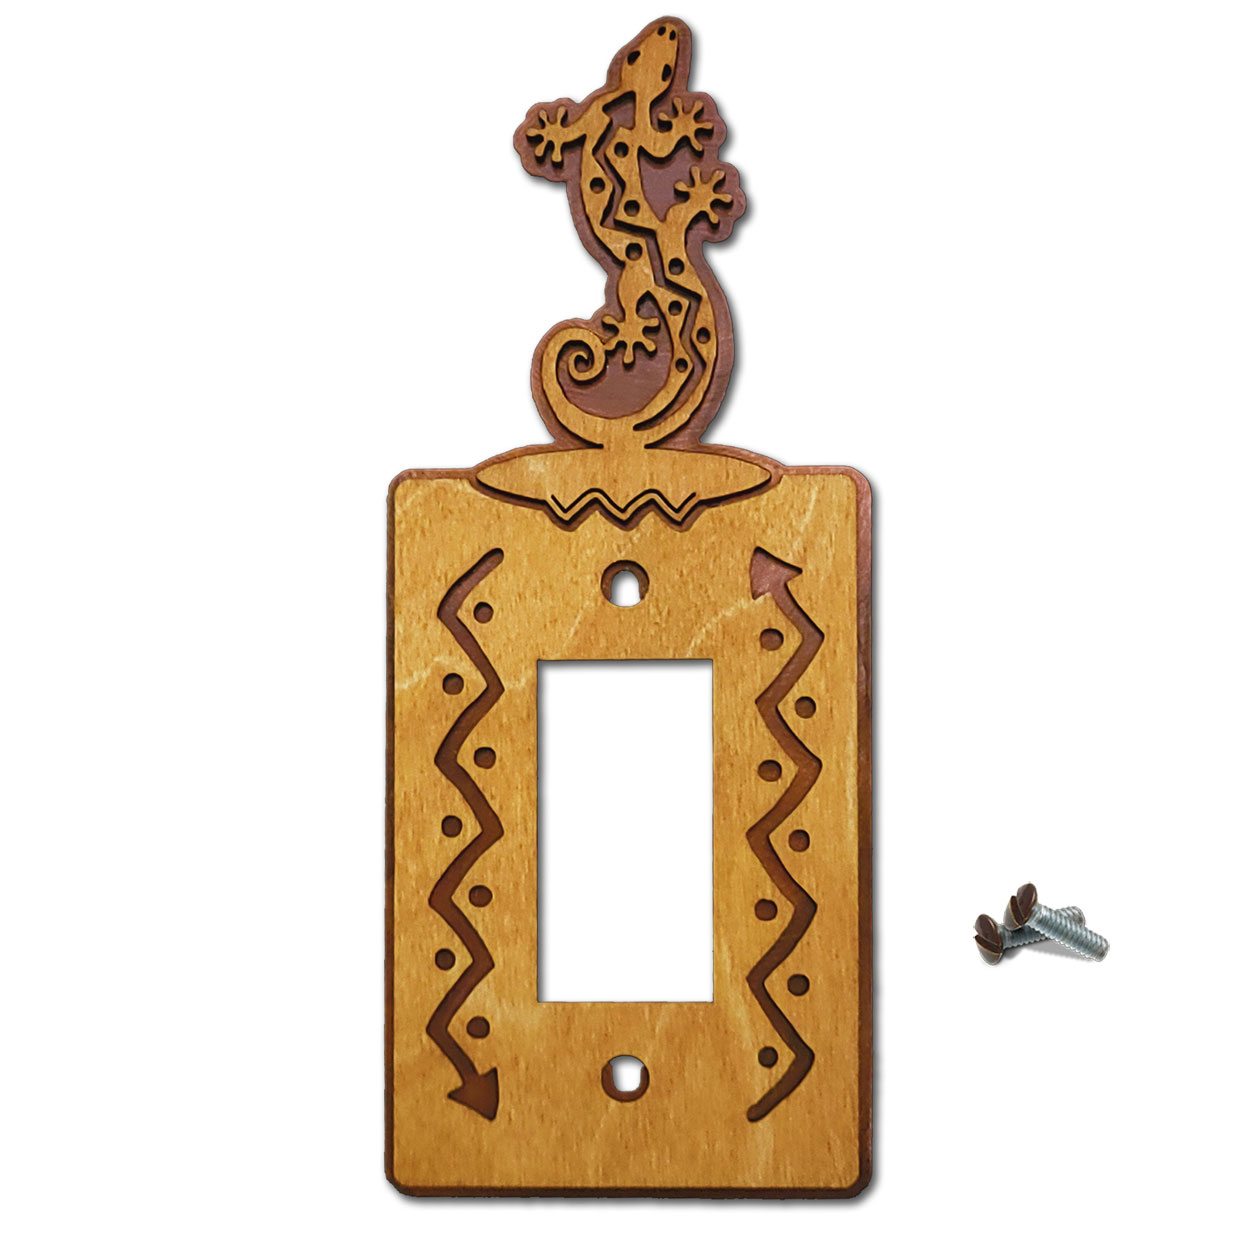 168021R - Climbing Gecko Southwestern Decor Single Rocker Switch Plate in Golden Sienna